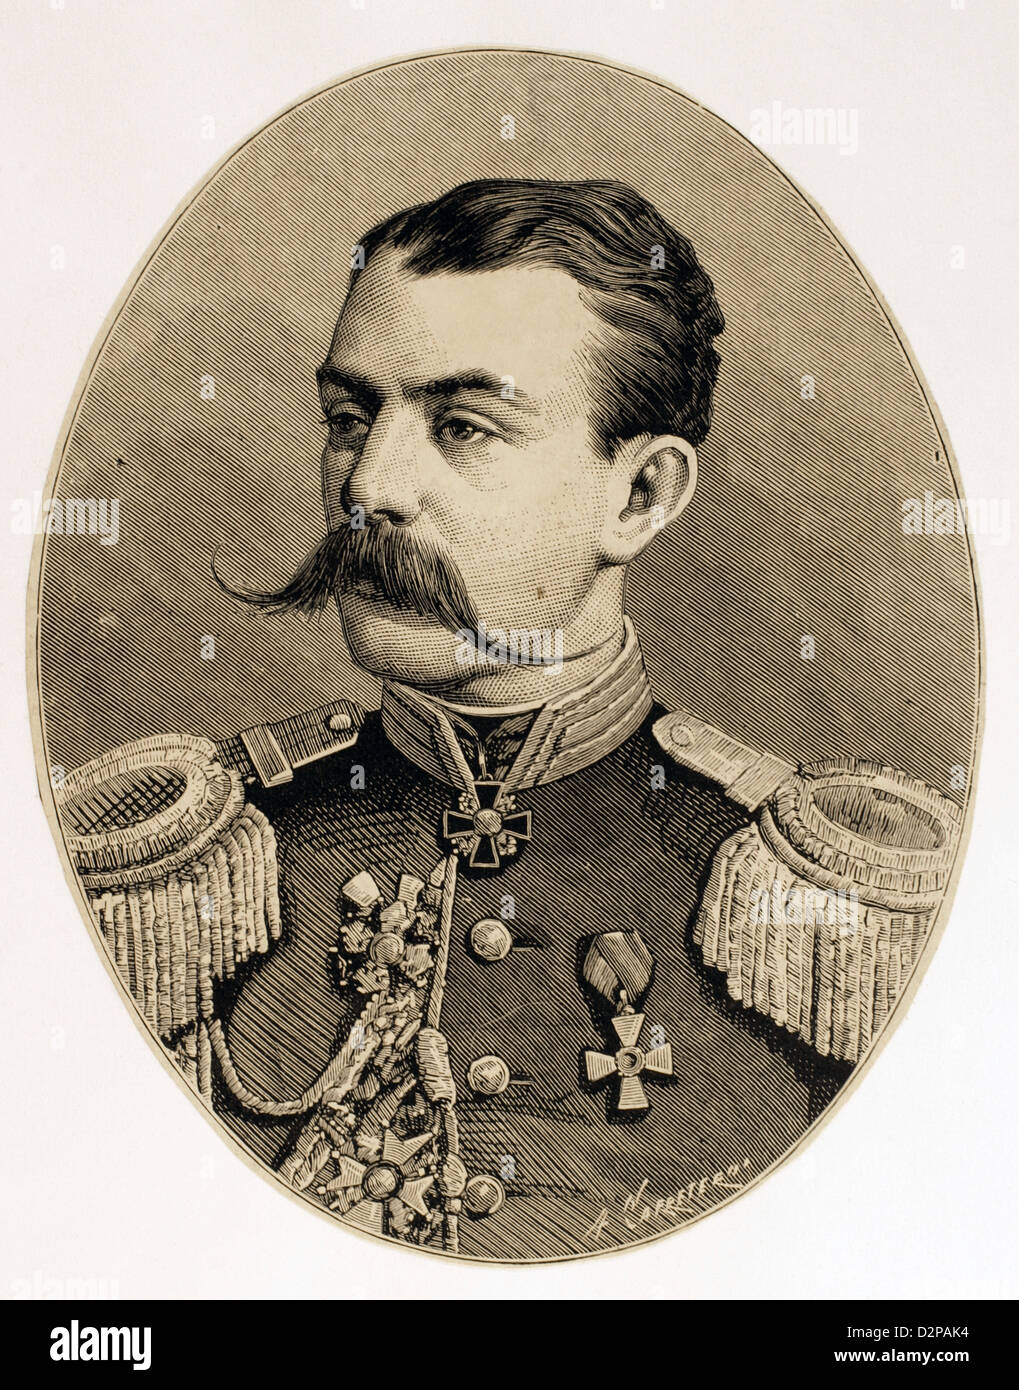 Astrukoff. Russischer General in den russisch-türkischen Krieg von 1877-1878. Kupferstich von Carretero. Stockfoto